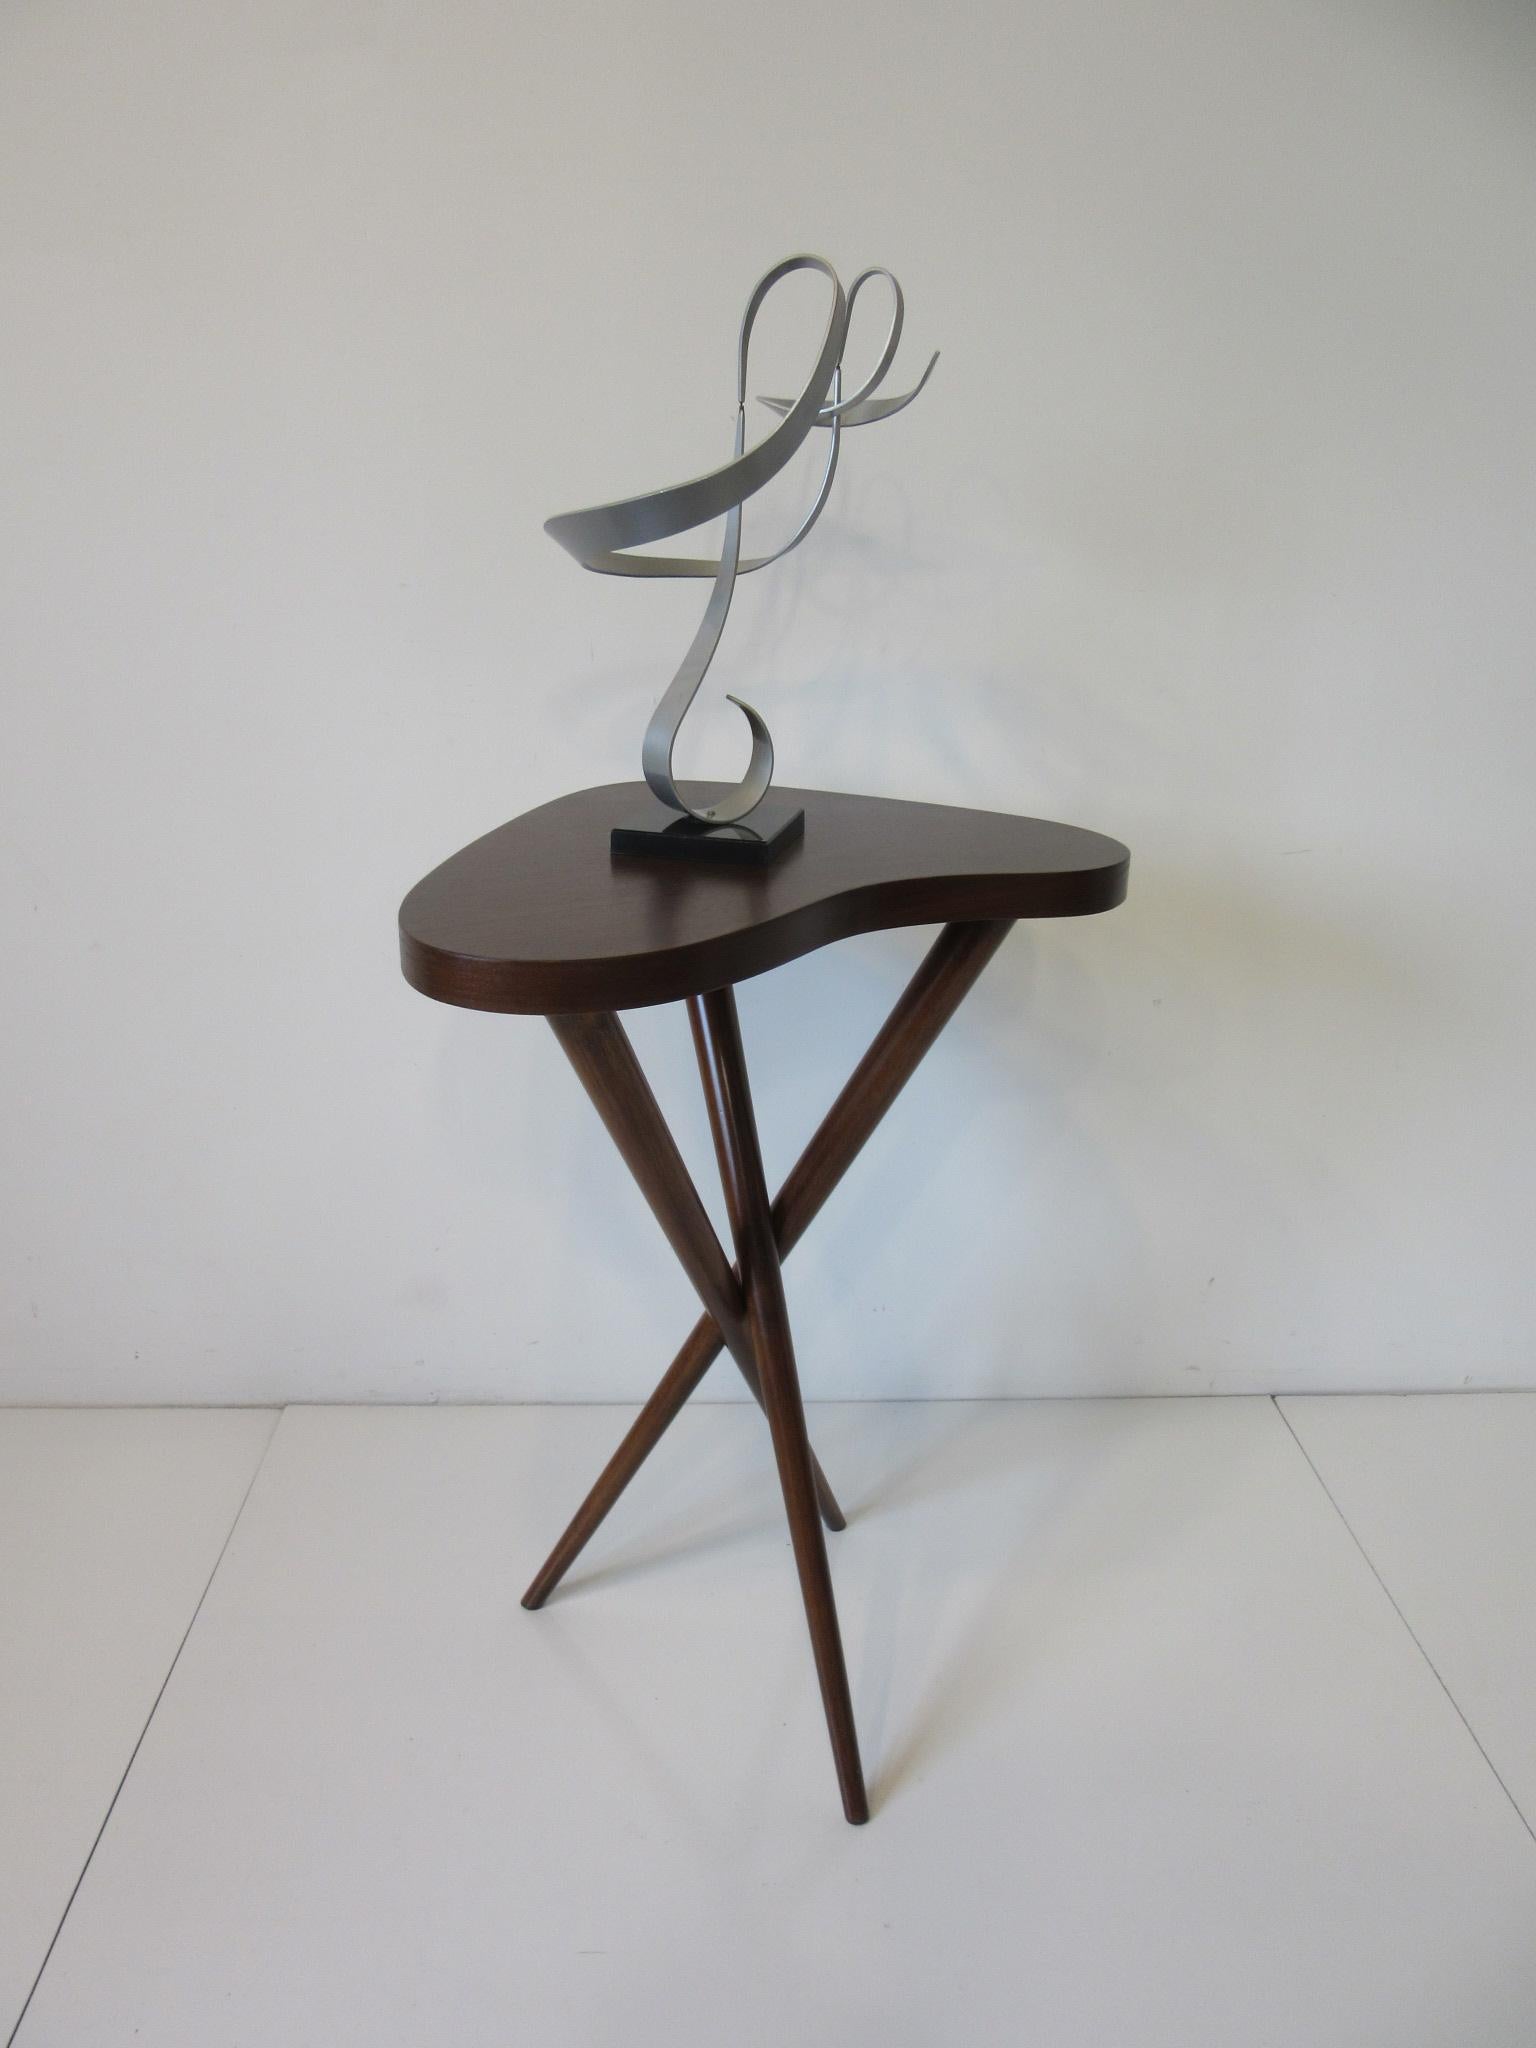 Pedestal Table in the Style of T.H. Robsjohn Gibbings  1